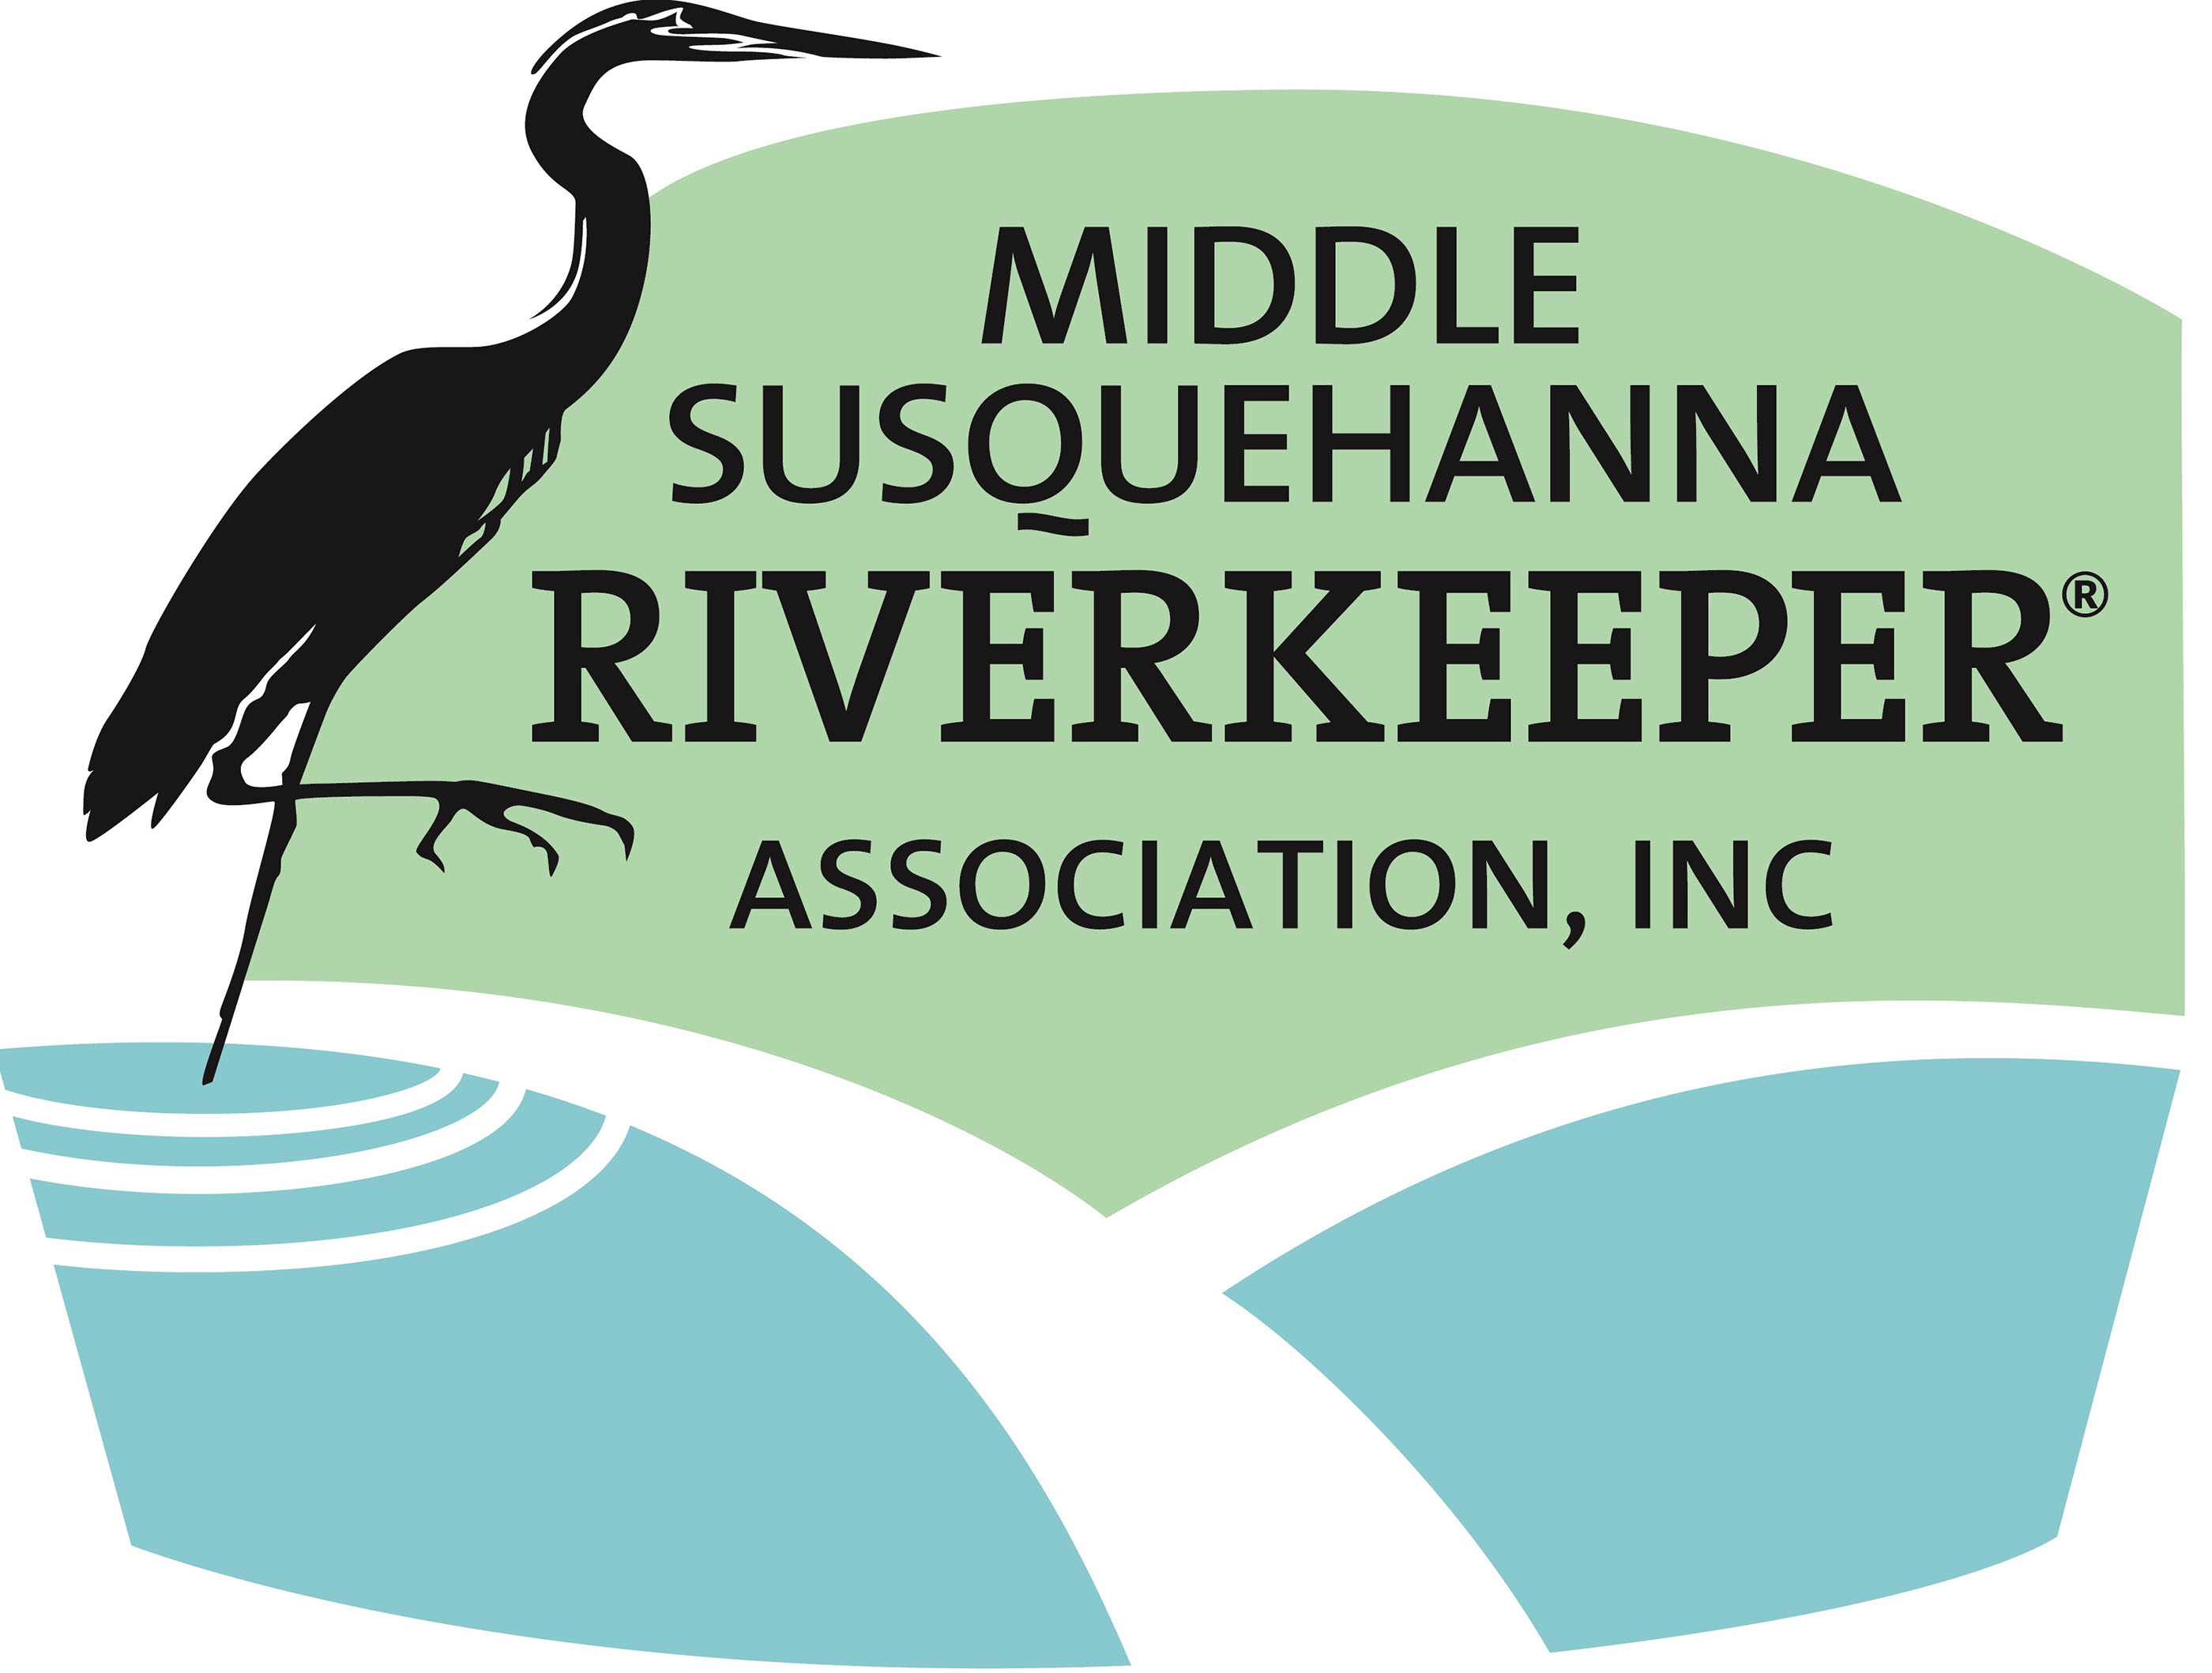 Middle Susquehanna Riverkeeper Association, Inc. logo